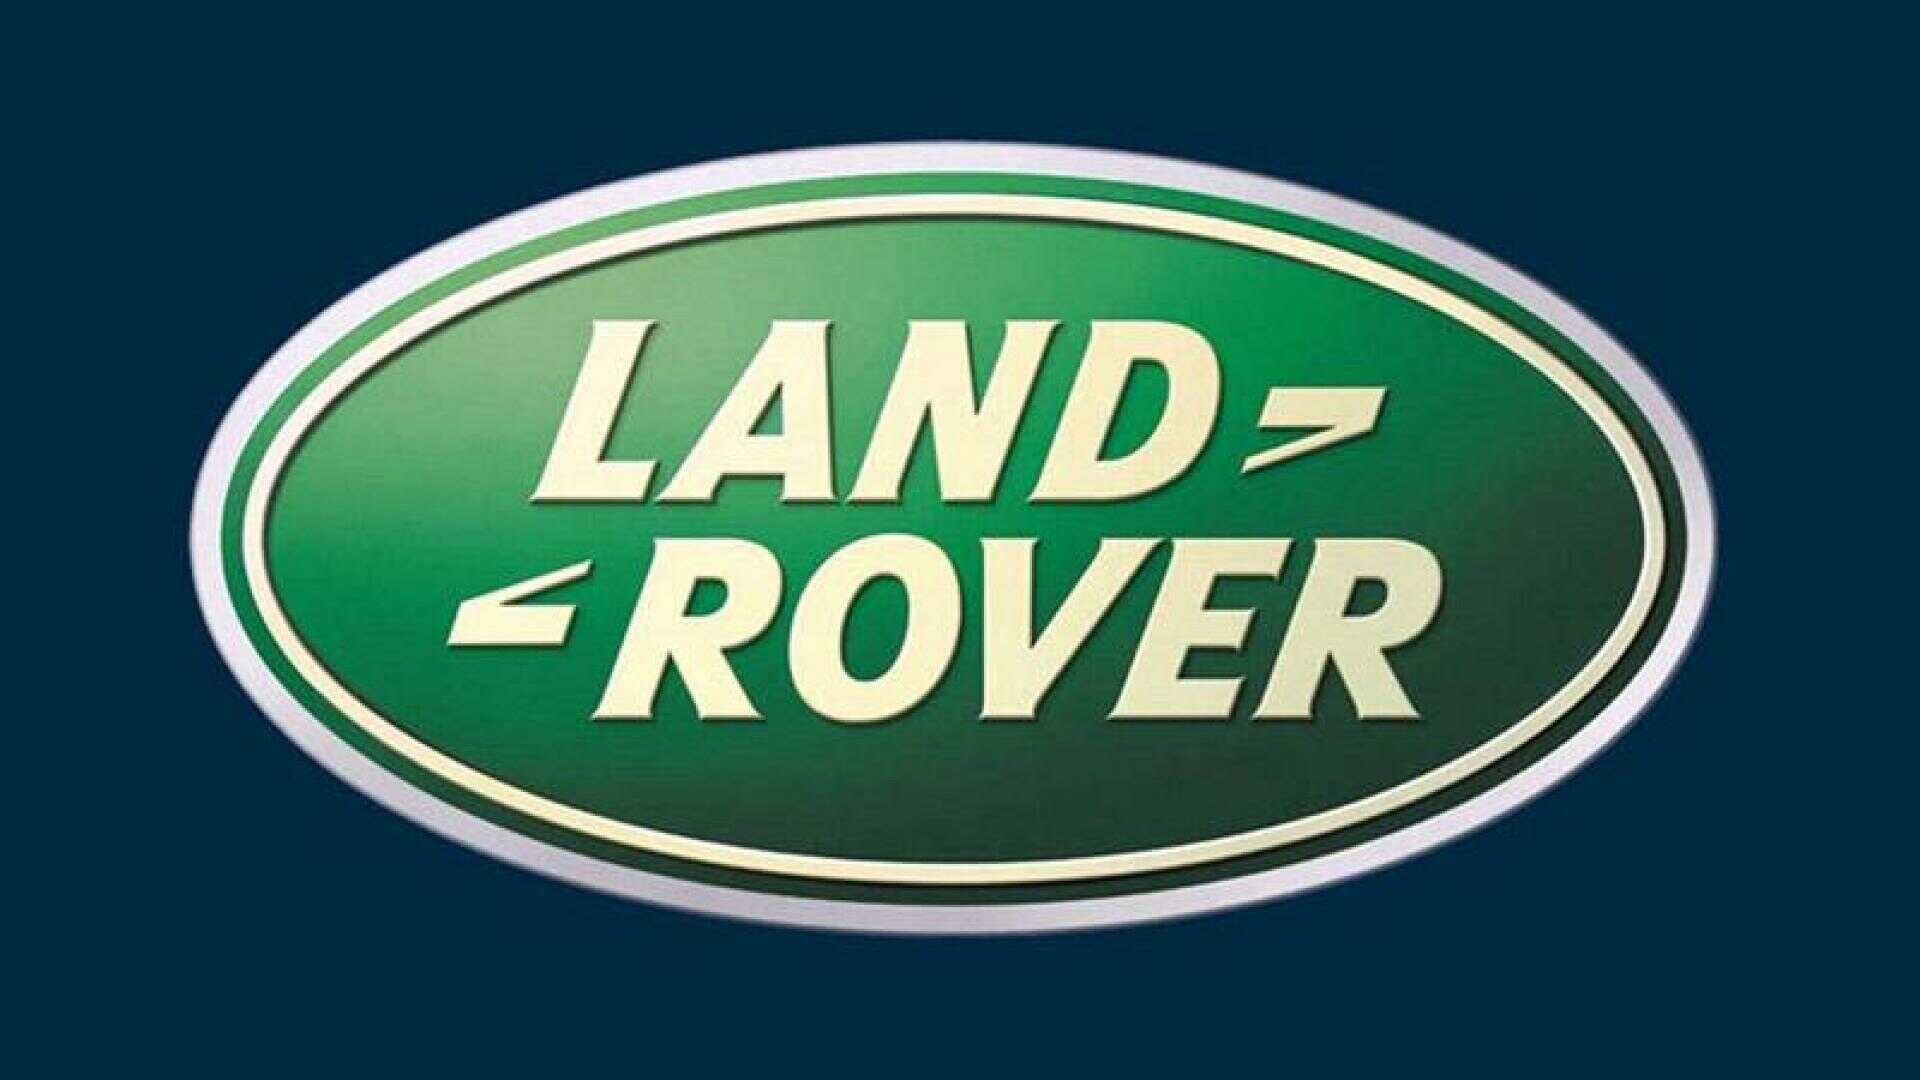 Giá xe Land Rover